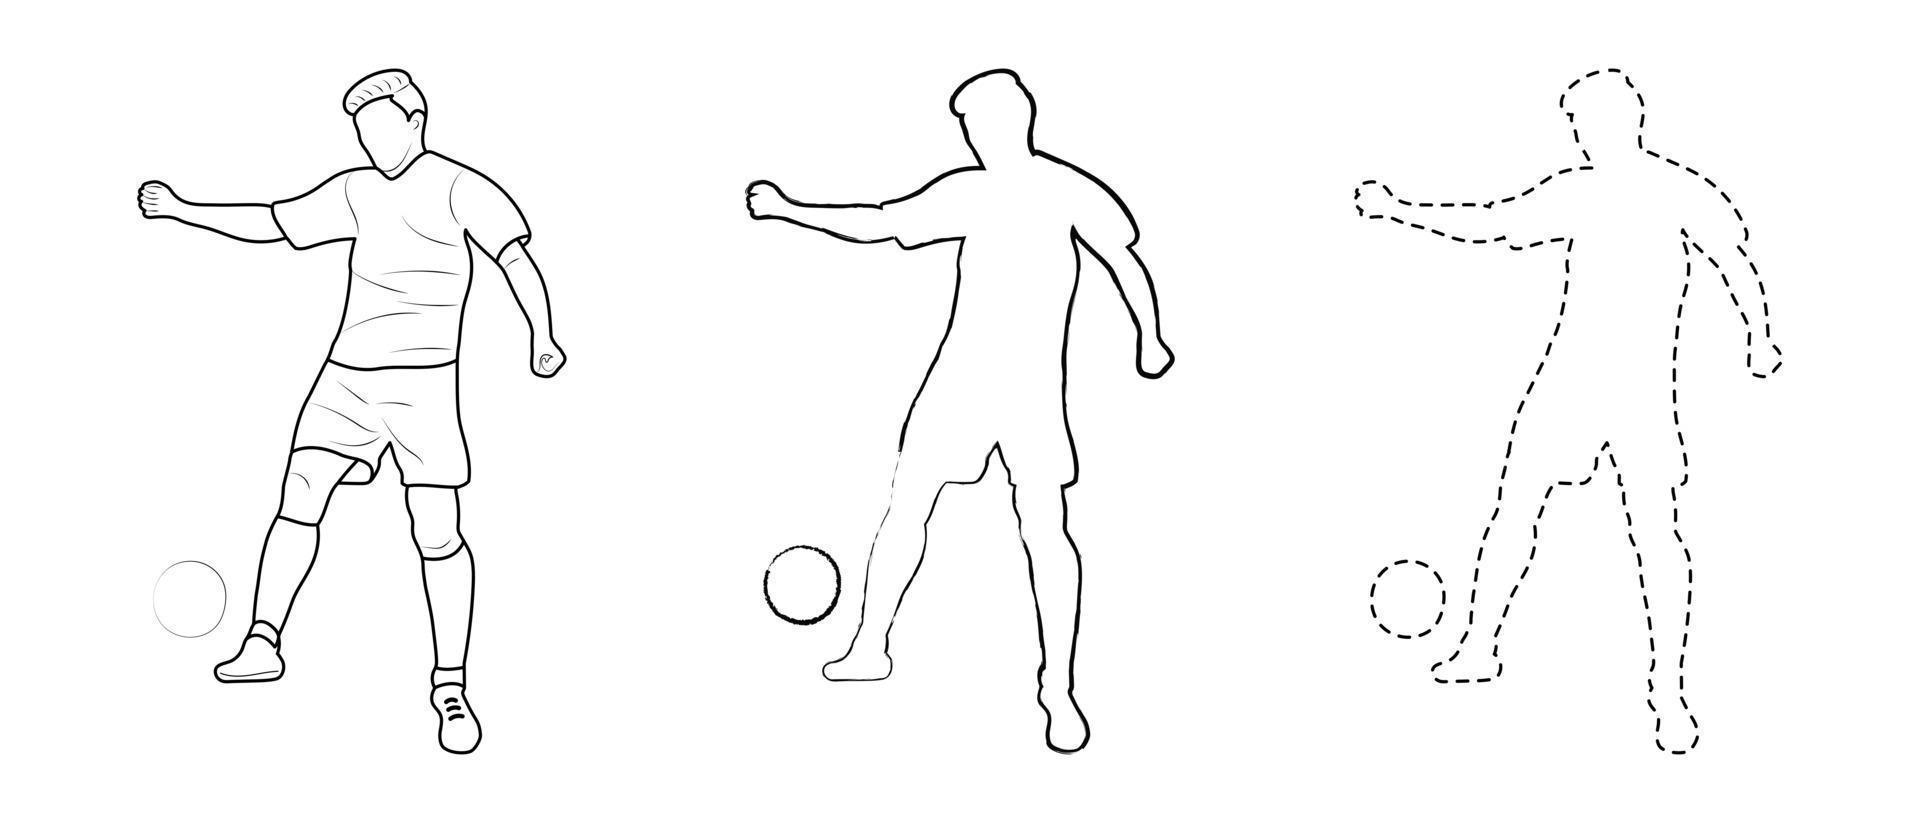 desenho de esboço, contorno de silhueta, jogador de futebol esportista no jogo de bola. estilo de linha e pinceladas vetor